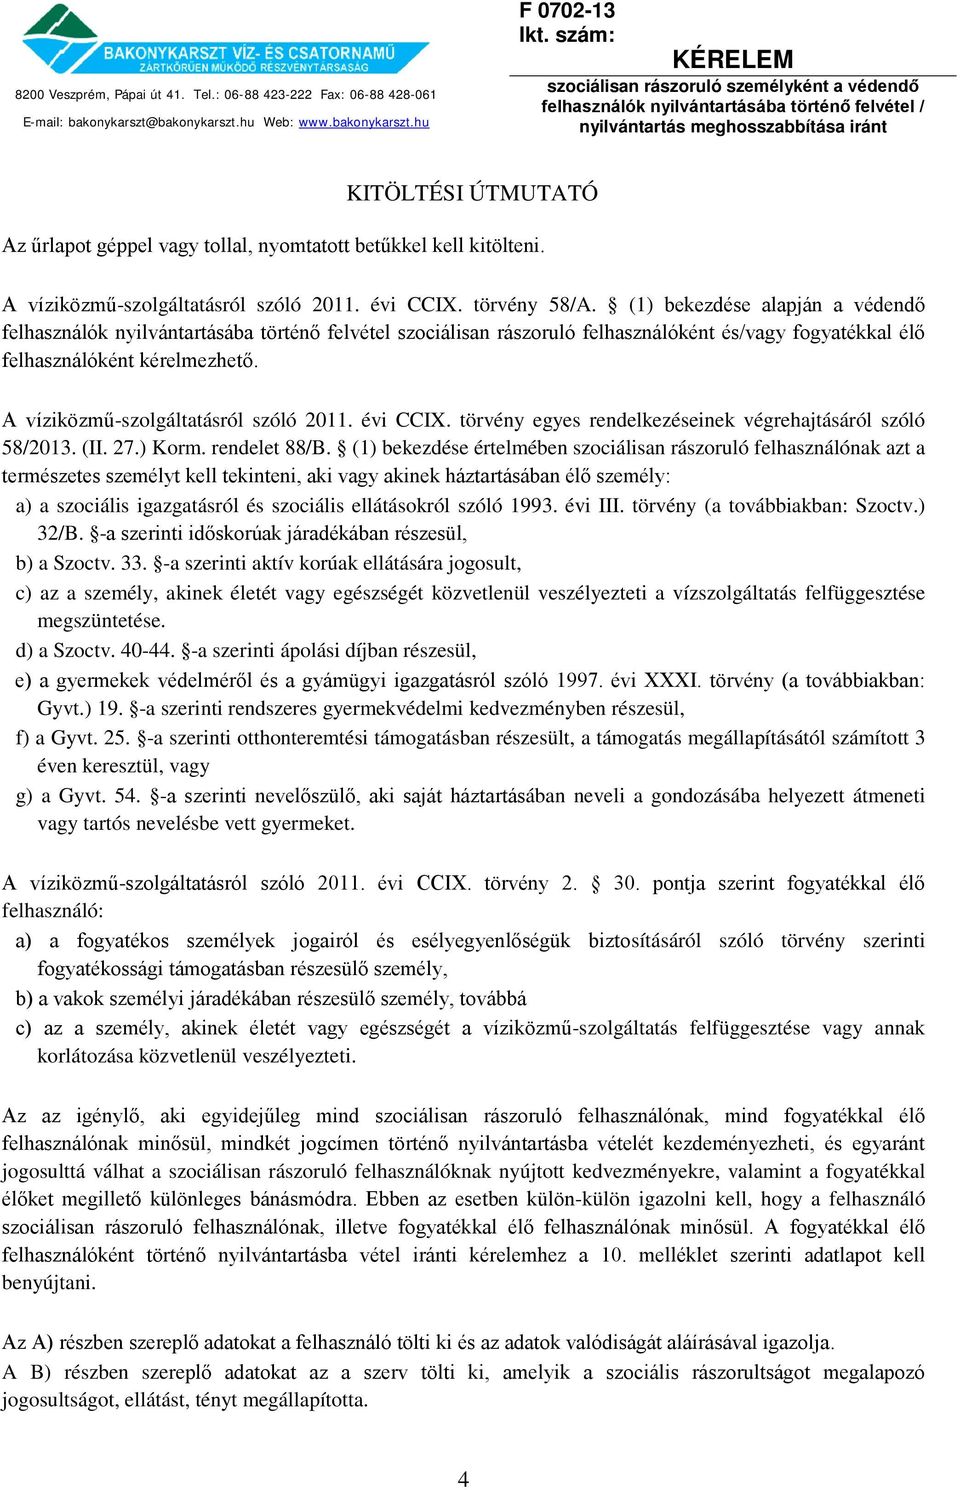 A víziközmű-szolgáltatásról szóló 2011. évi CCIX. törvény egyes rendelkezéseinek végrehajtásáról szóló 58/2013. (II. 27.) Korm. rendelet 88/B.